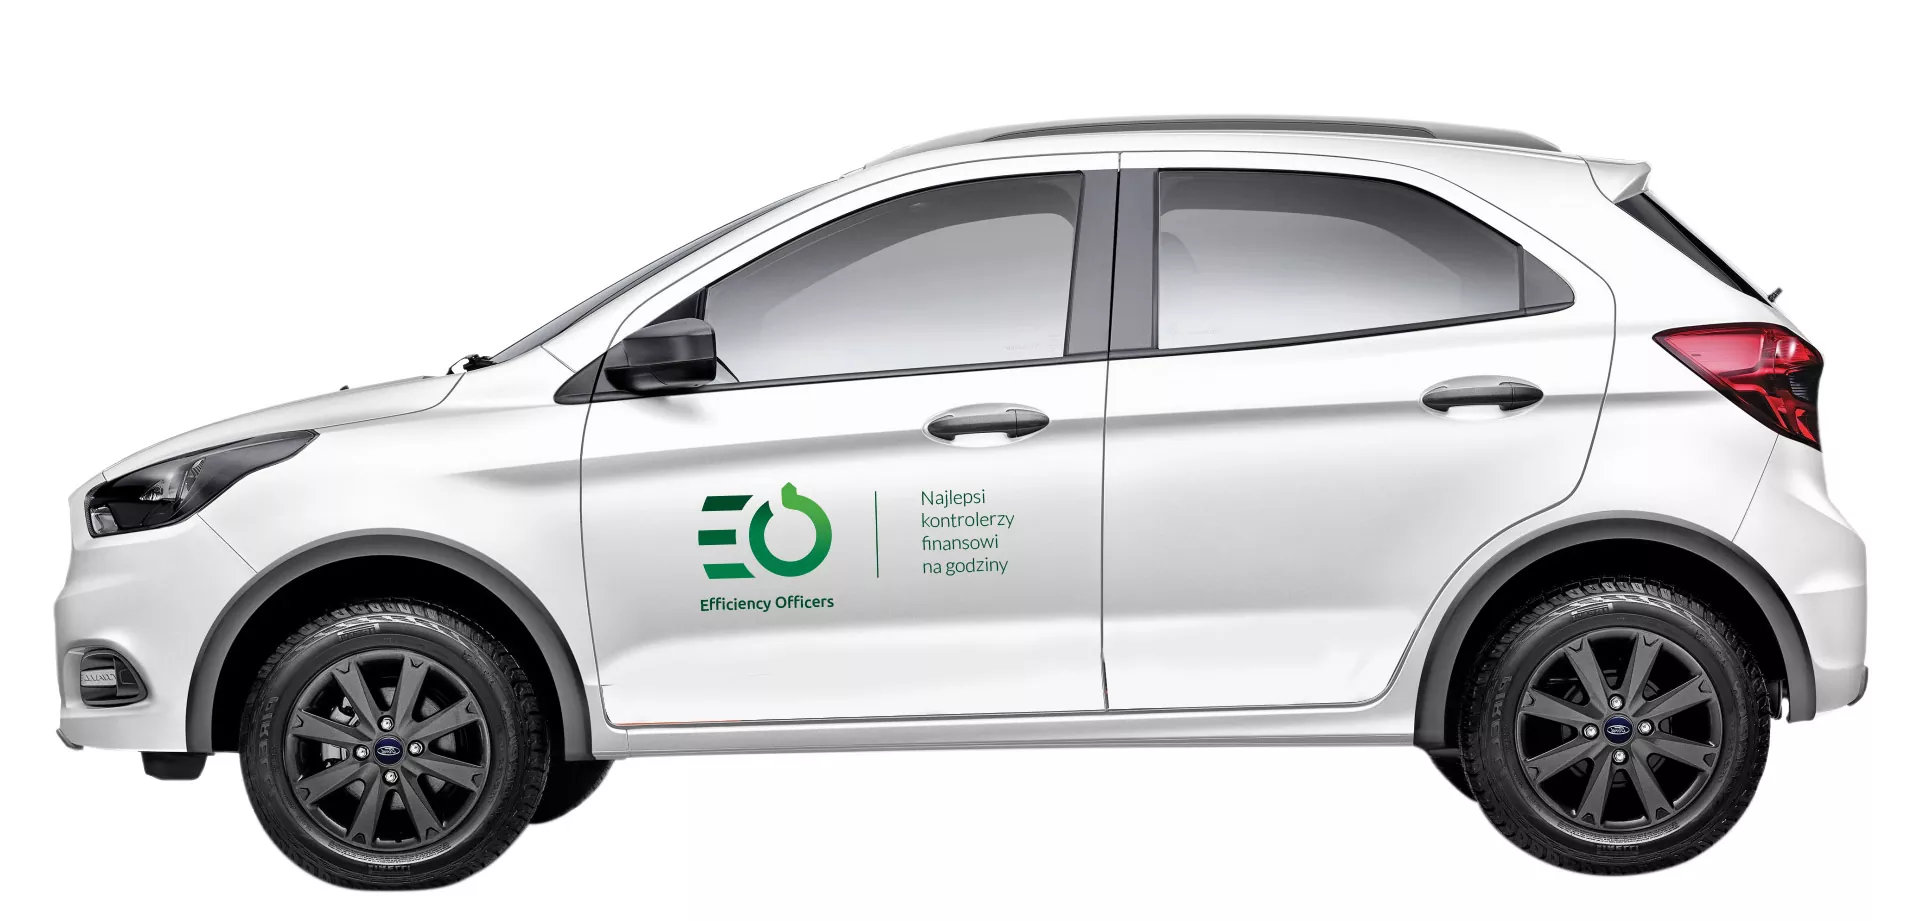 Efficiency Officers identyfikacja wizualna - projekt logo, wizualizacja oklejenia samochodu firmowego